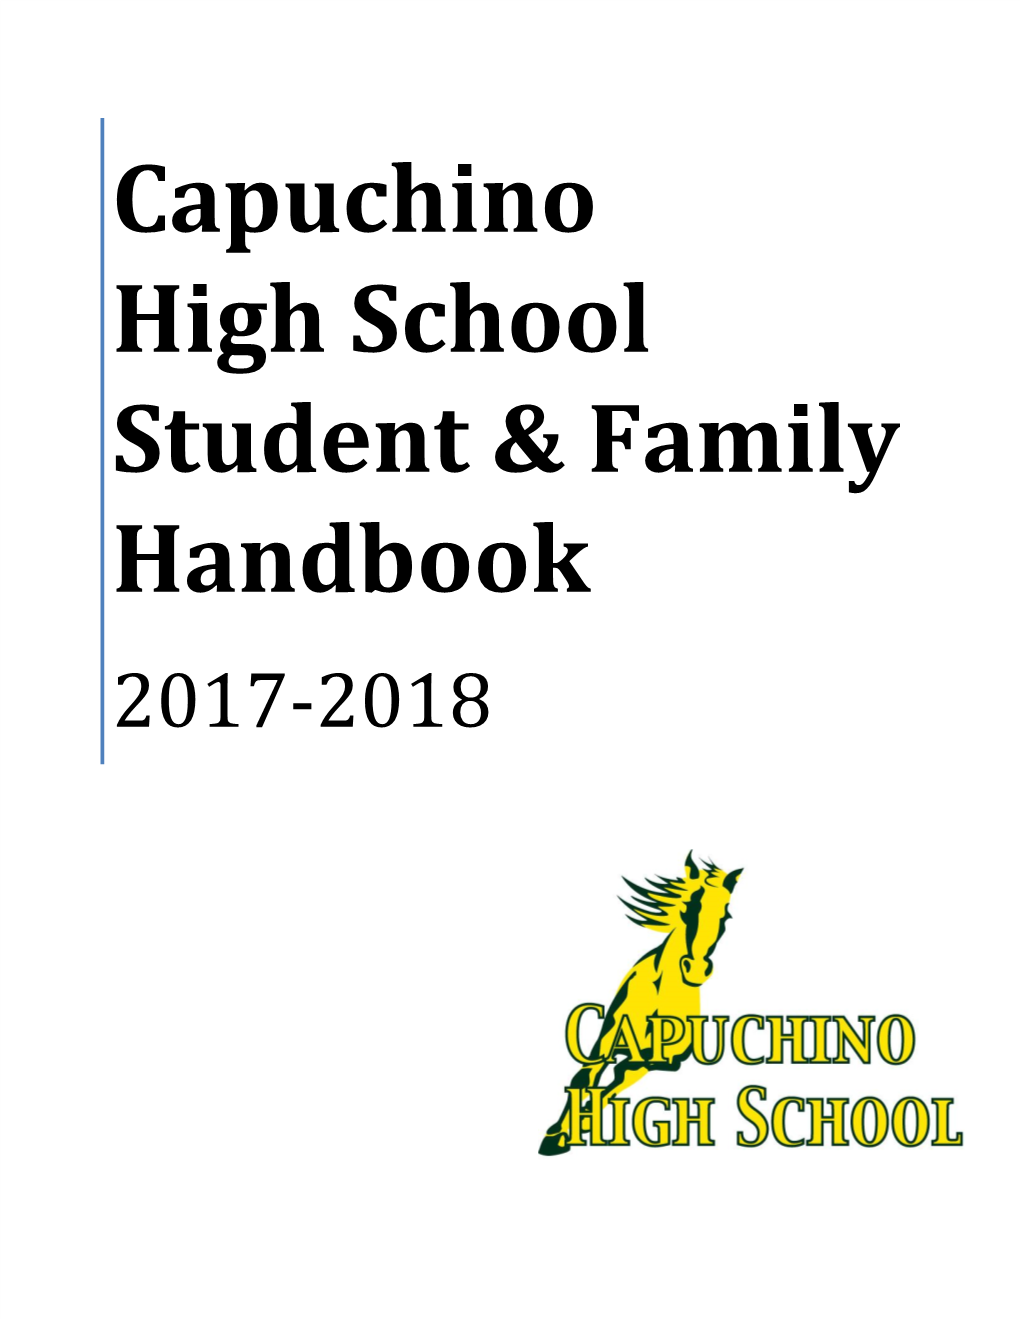 Capuchino High School Student & Family Handbook